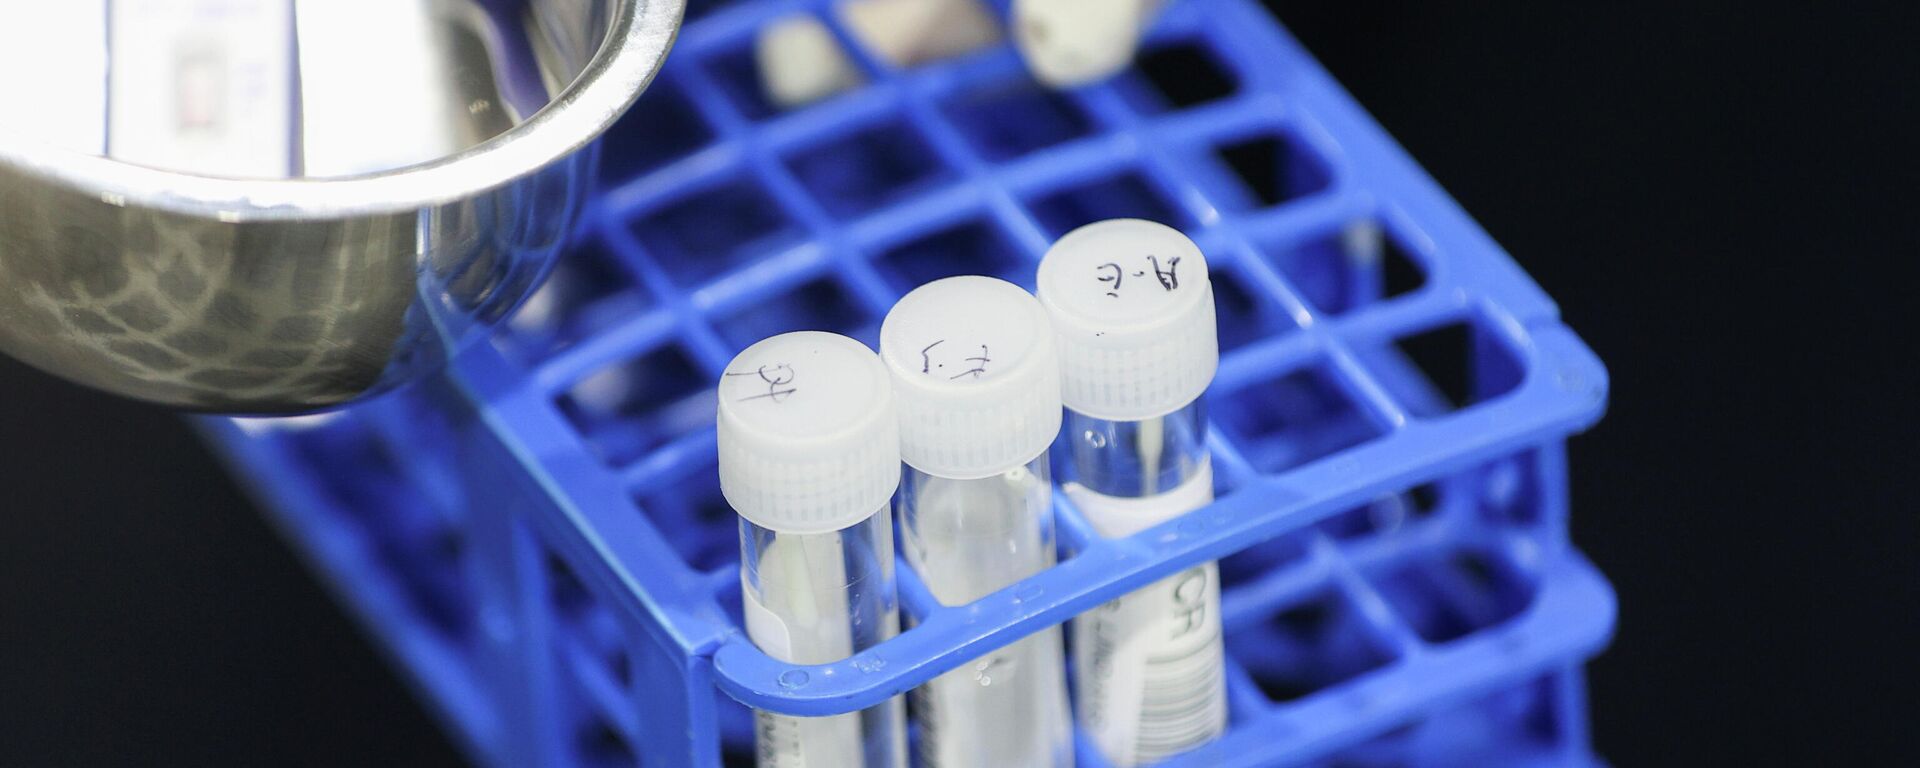 Un médico realiza pruebas RT-PCR en una instalación de prueba de COVID-19  - Sputnik Mundo, 1920, 29.11.2021